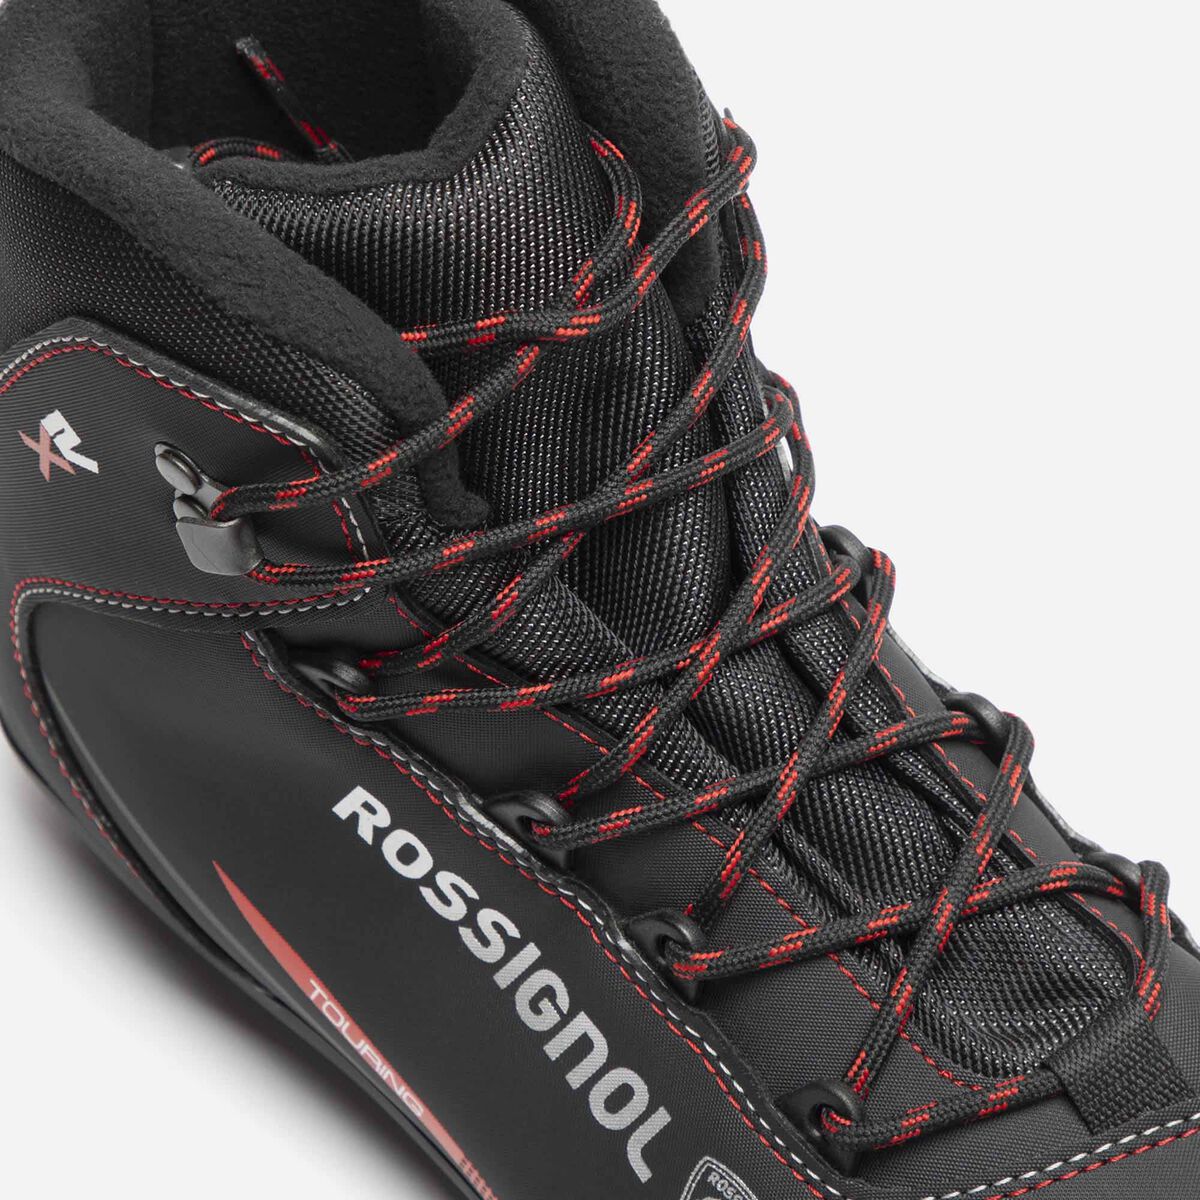 Chaussures de ski nordique Enfant X-R Combi